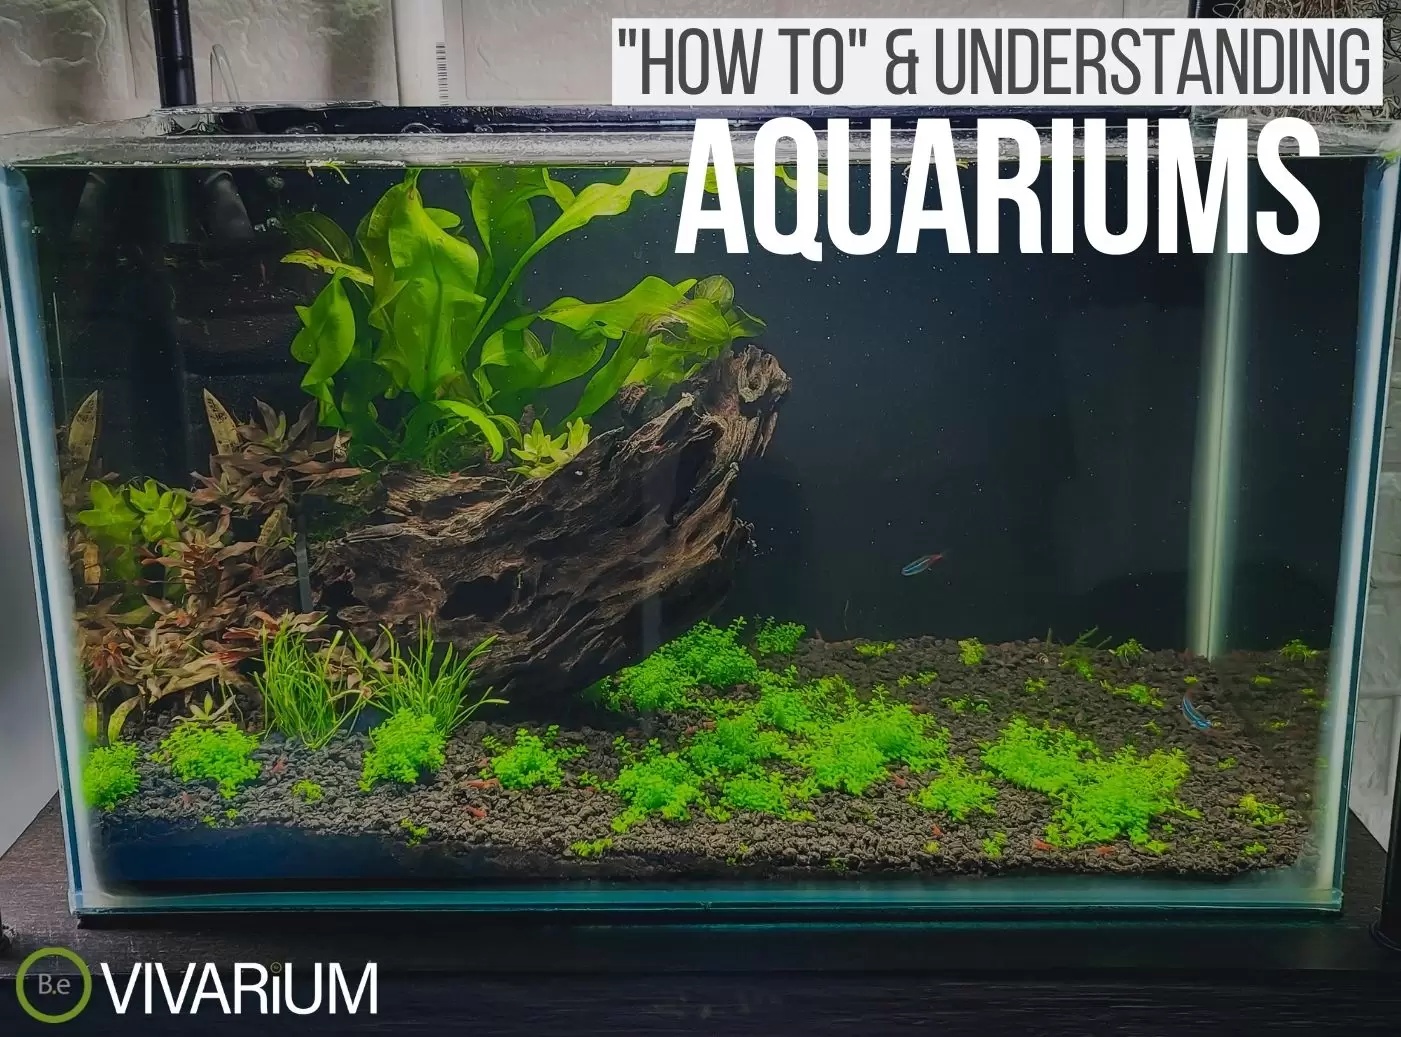 Aquarium: Complete Care Guide & How To Build